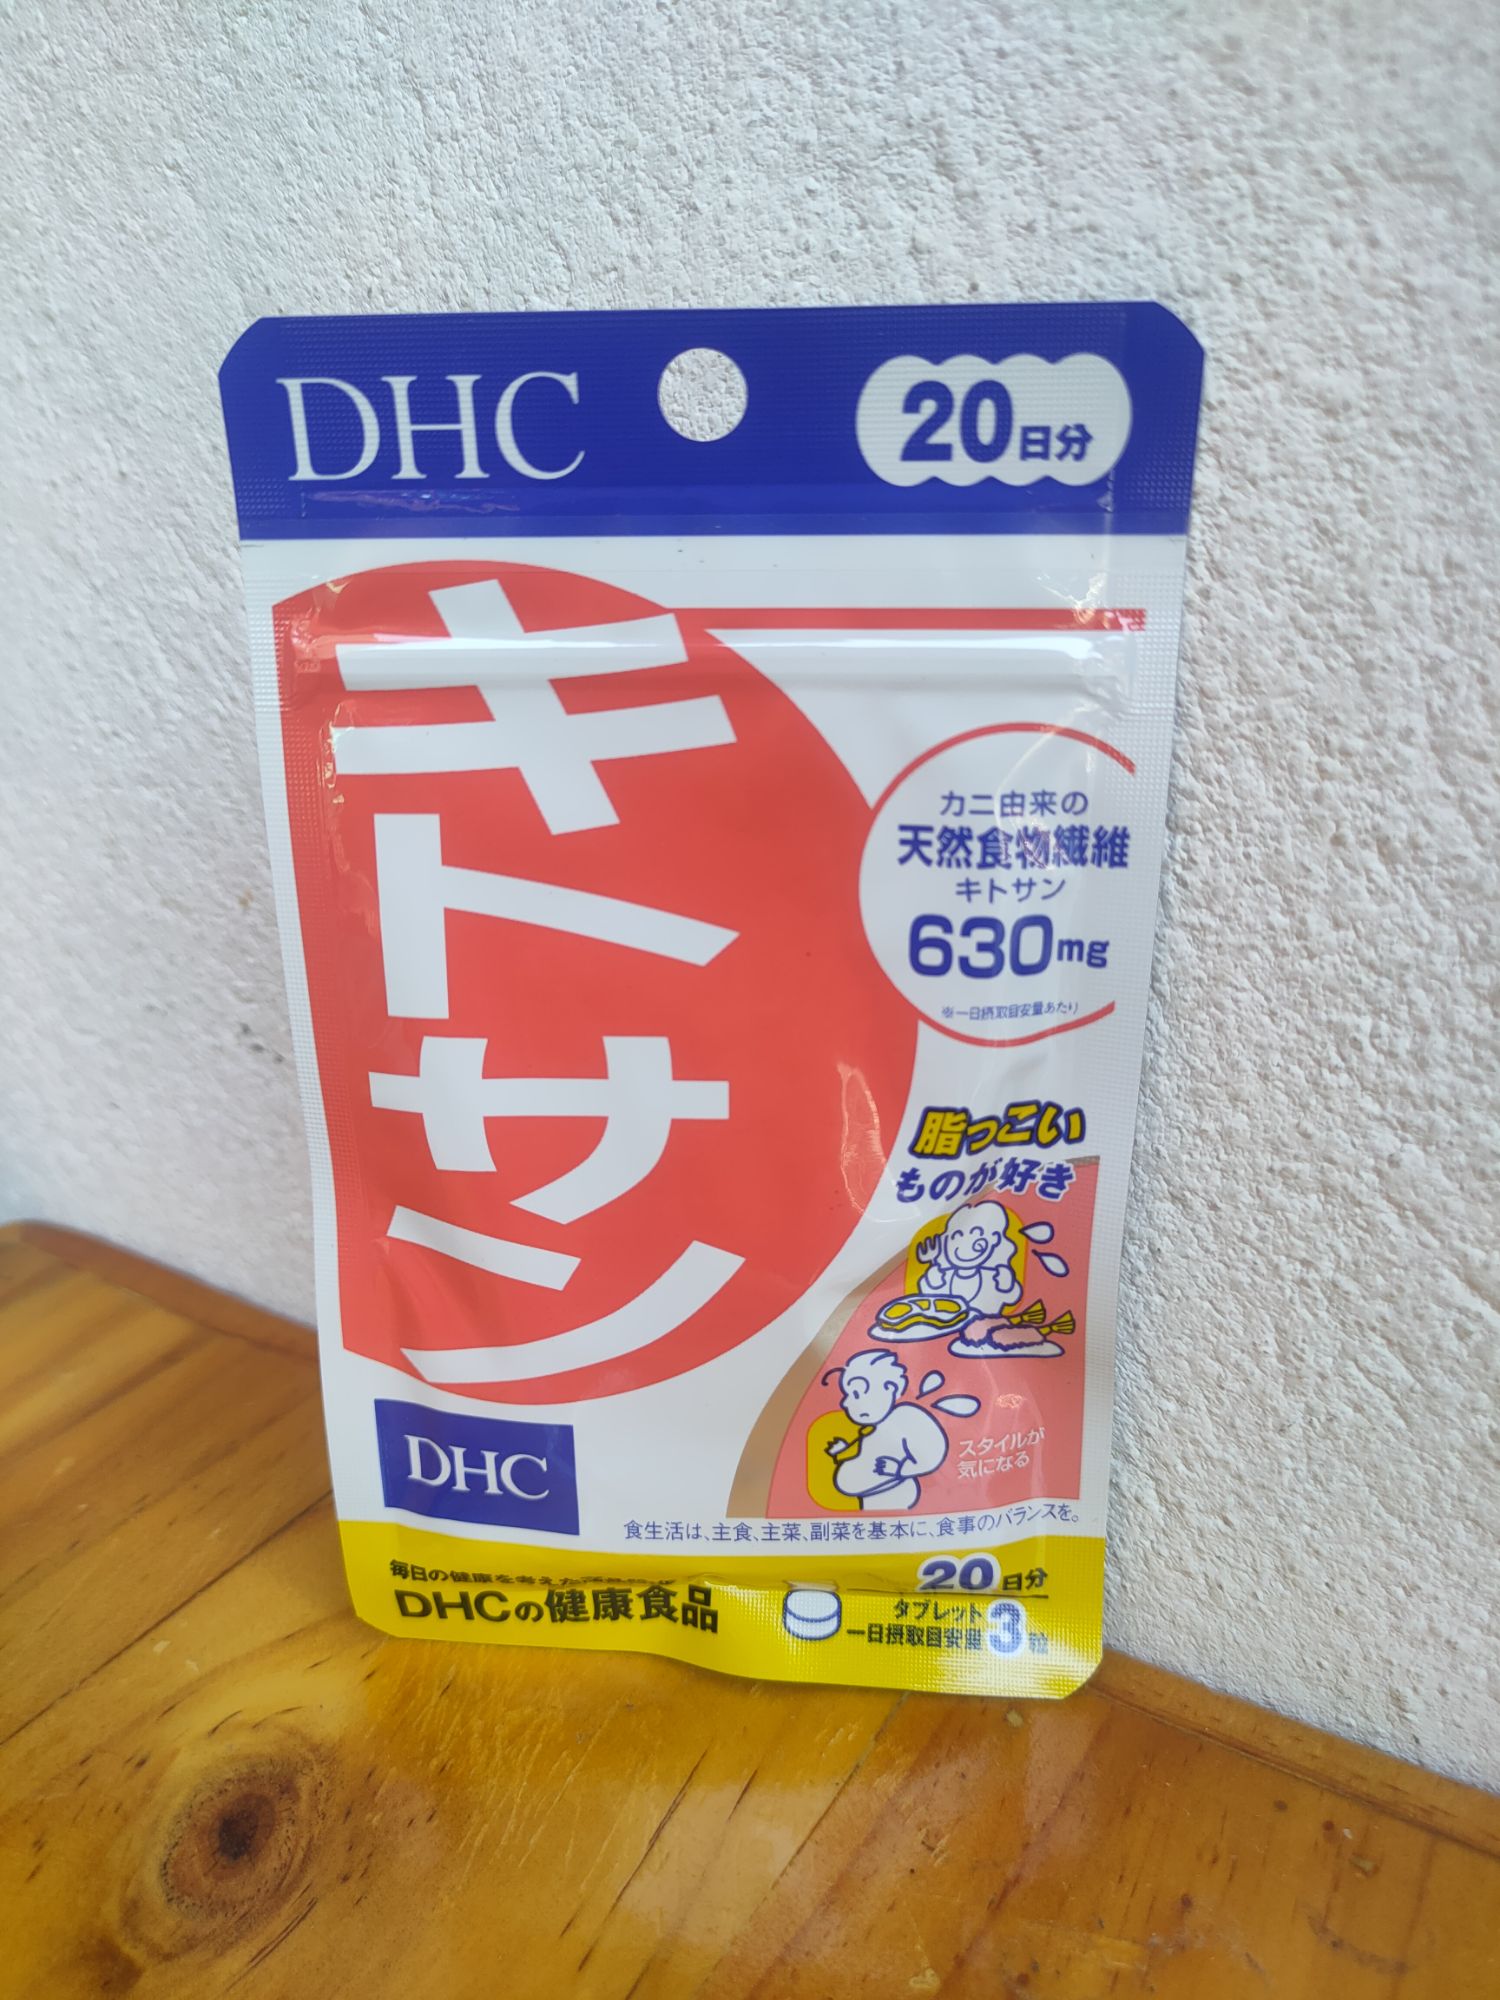 [[ราคาต่อซอง]] DHC Kitosan บล๊อคไขมัน ลดพุง 20 วัน ราคาดังกล่าวเป็นราคาต่อซองนะคะ